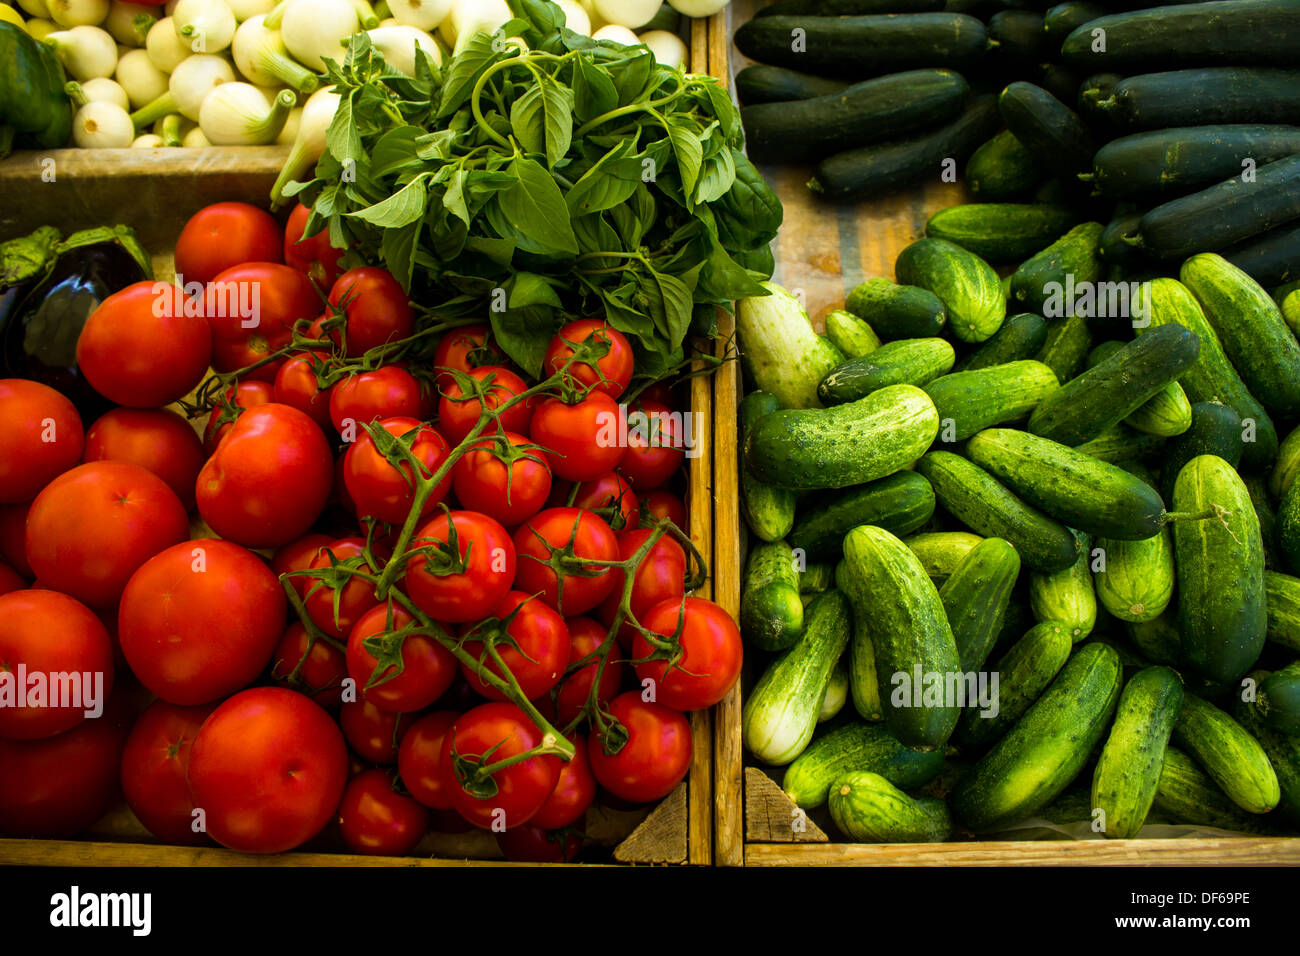 Vari ortaggi in stallo del mercato, compresi i pomodori e le zucchine, la cipolla, il basilico e melanzane Foto Stock